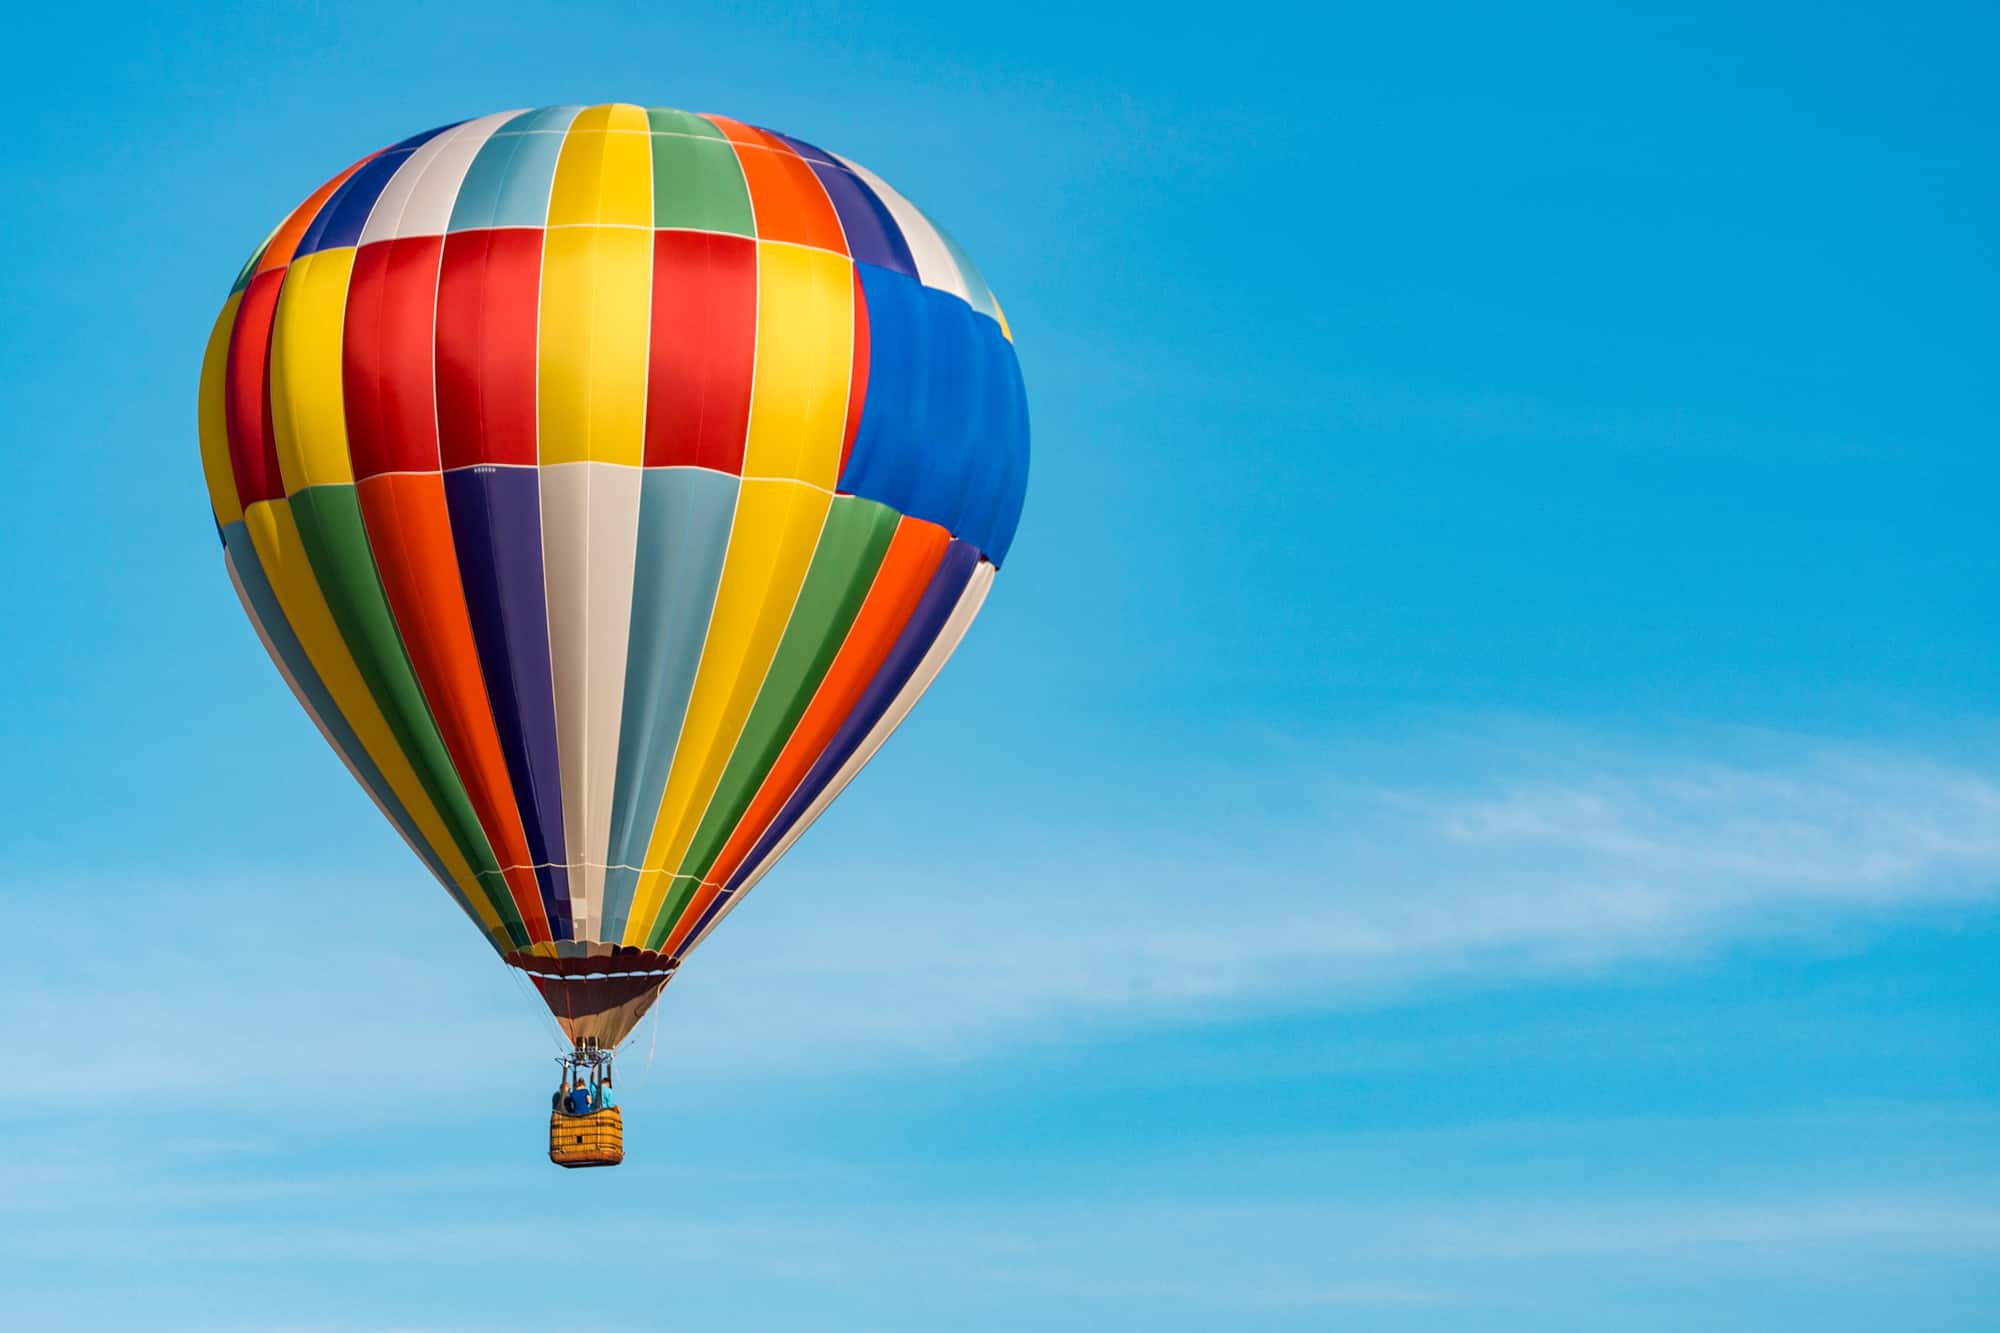 a colorful hot air balloon against a blue sky